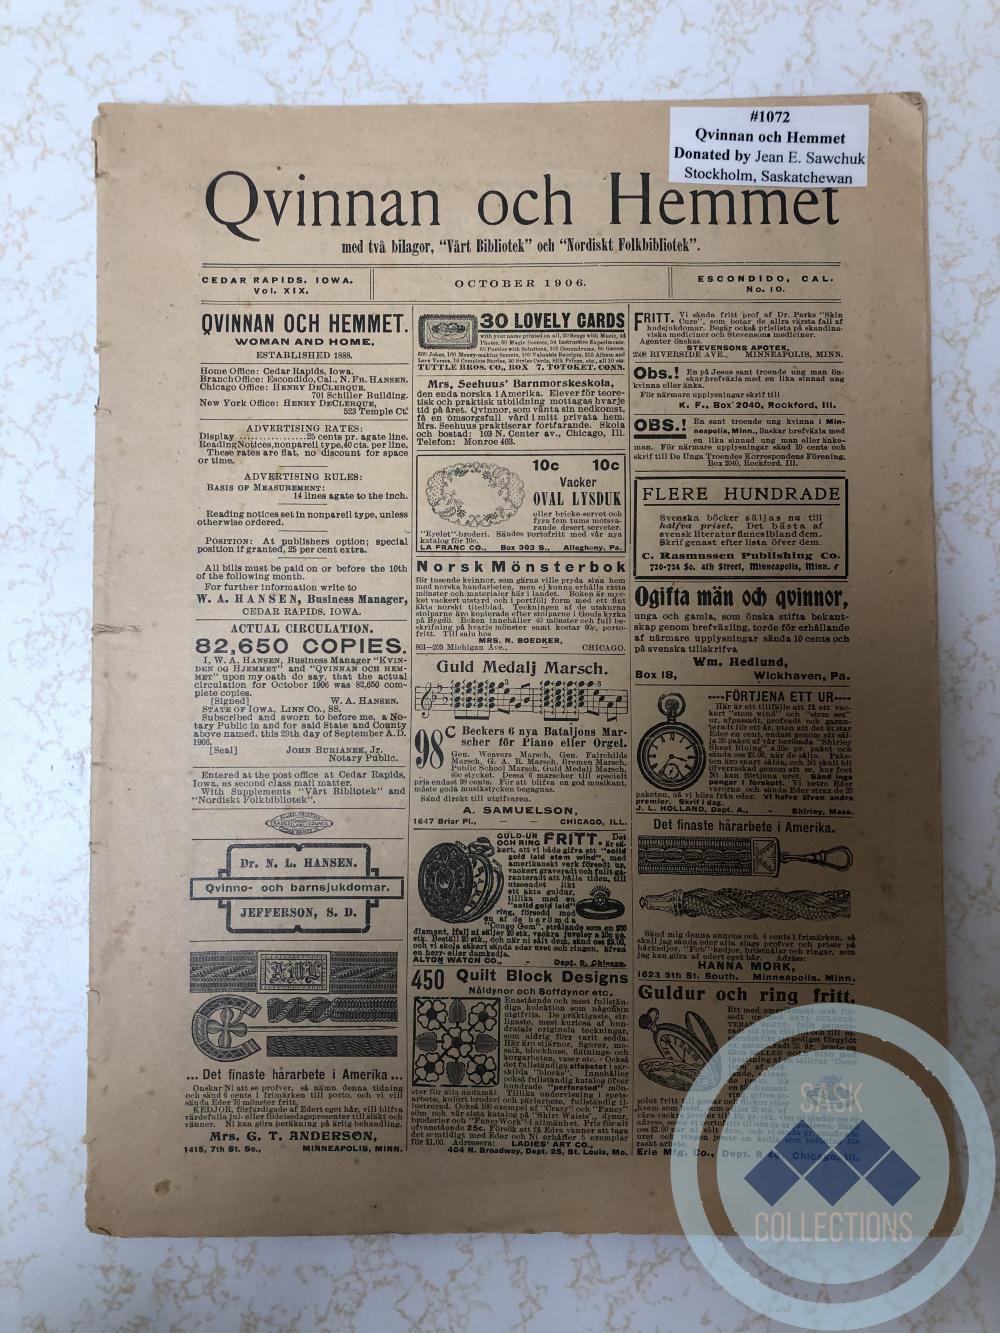 Qvinnan och Hemmet - Swedish book